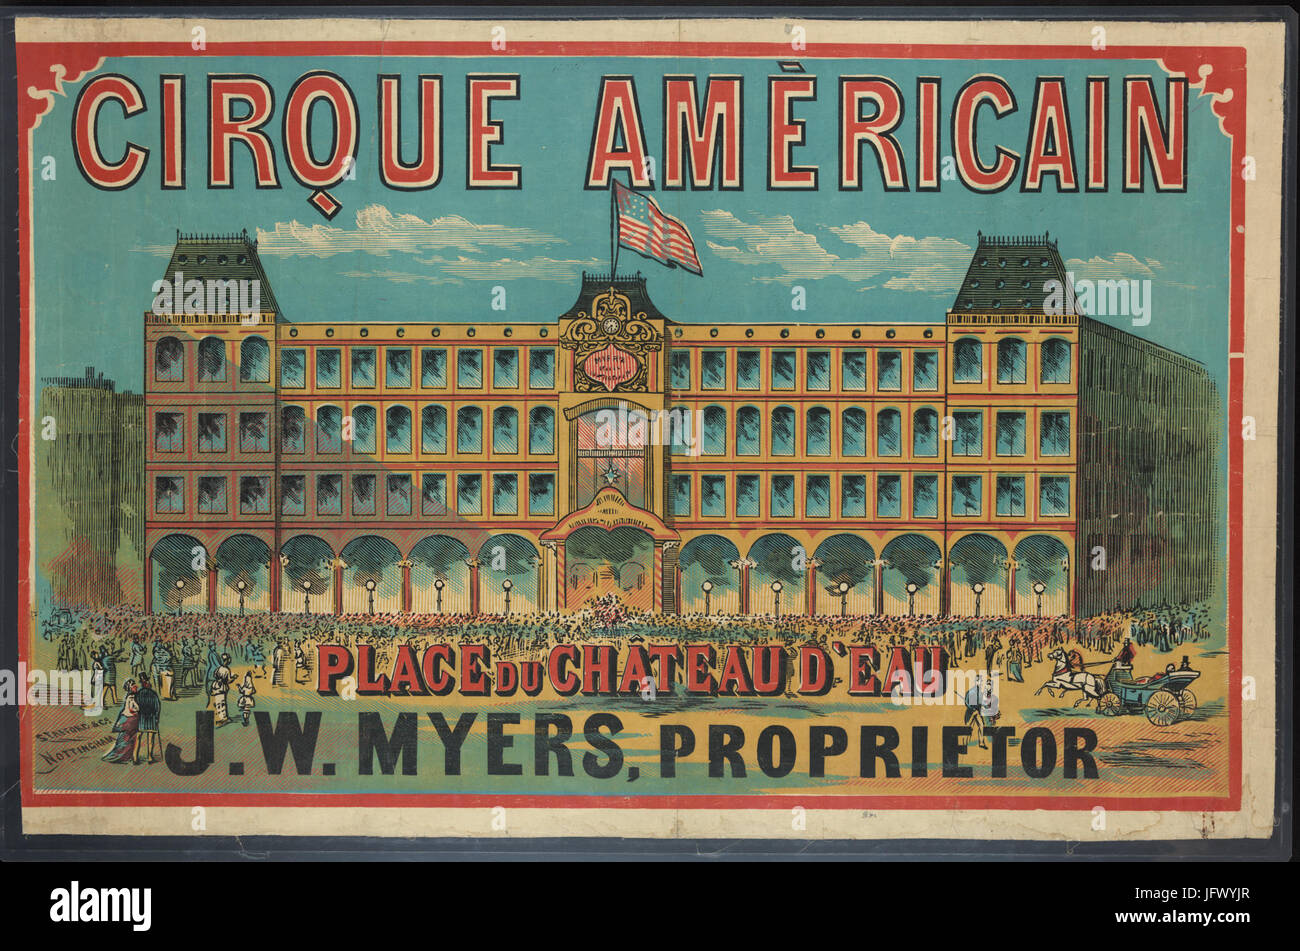 Cirque Américain - Place du Chateau d'Eau, J.W. Myers, proprietor Stock Photo